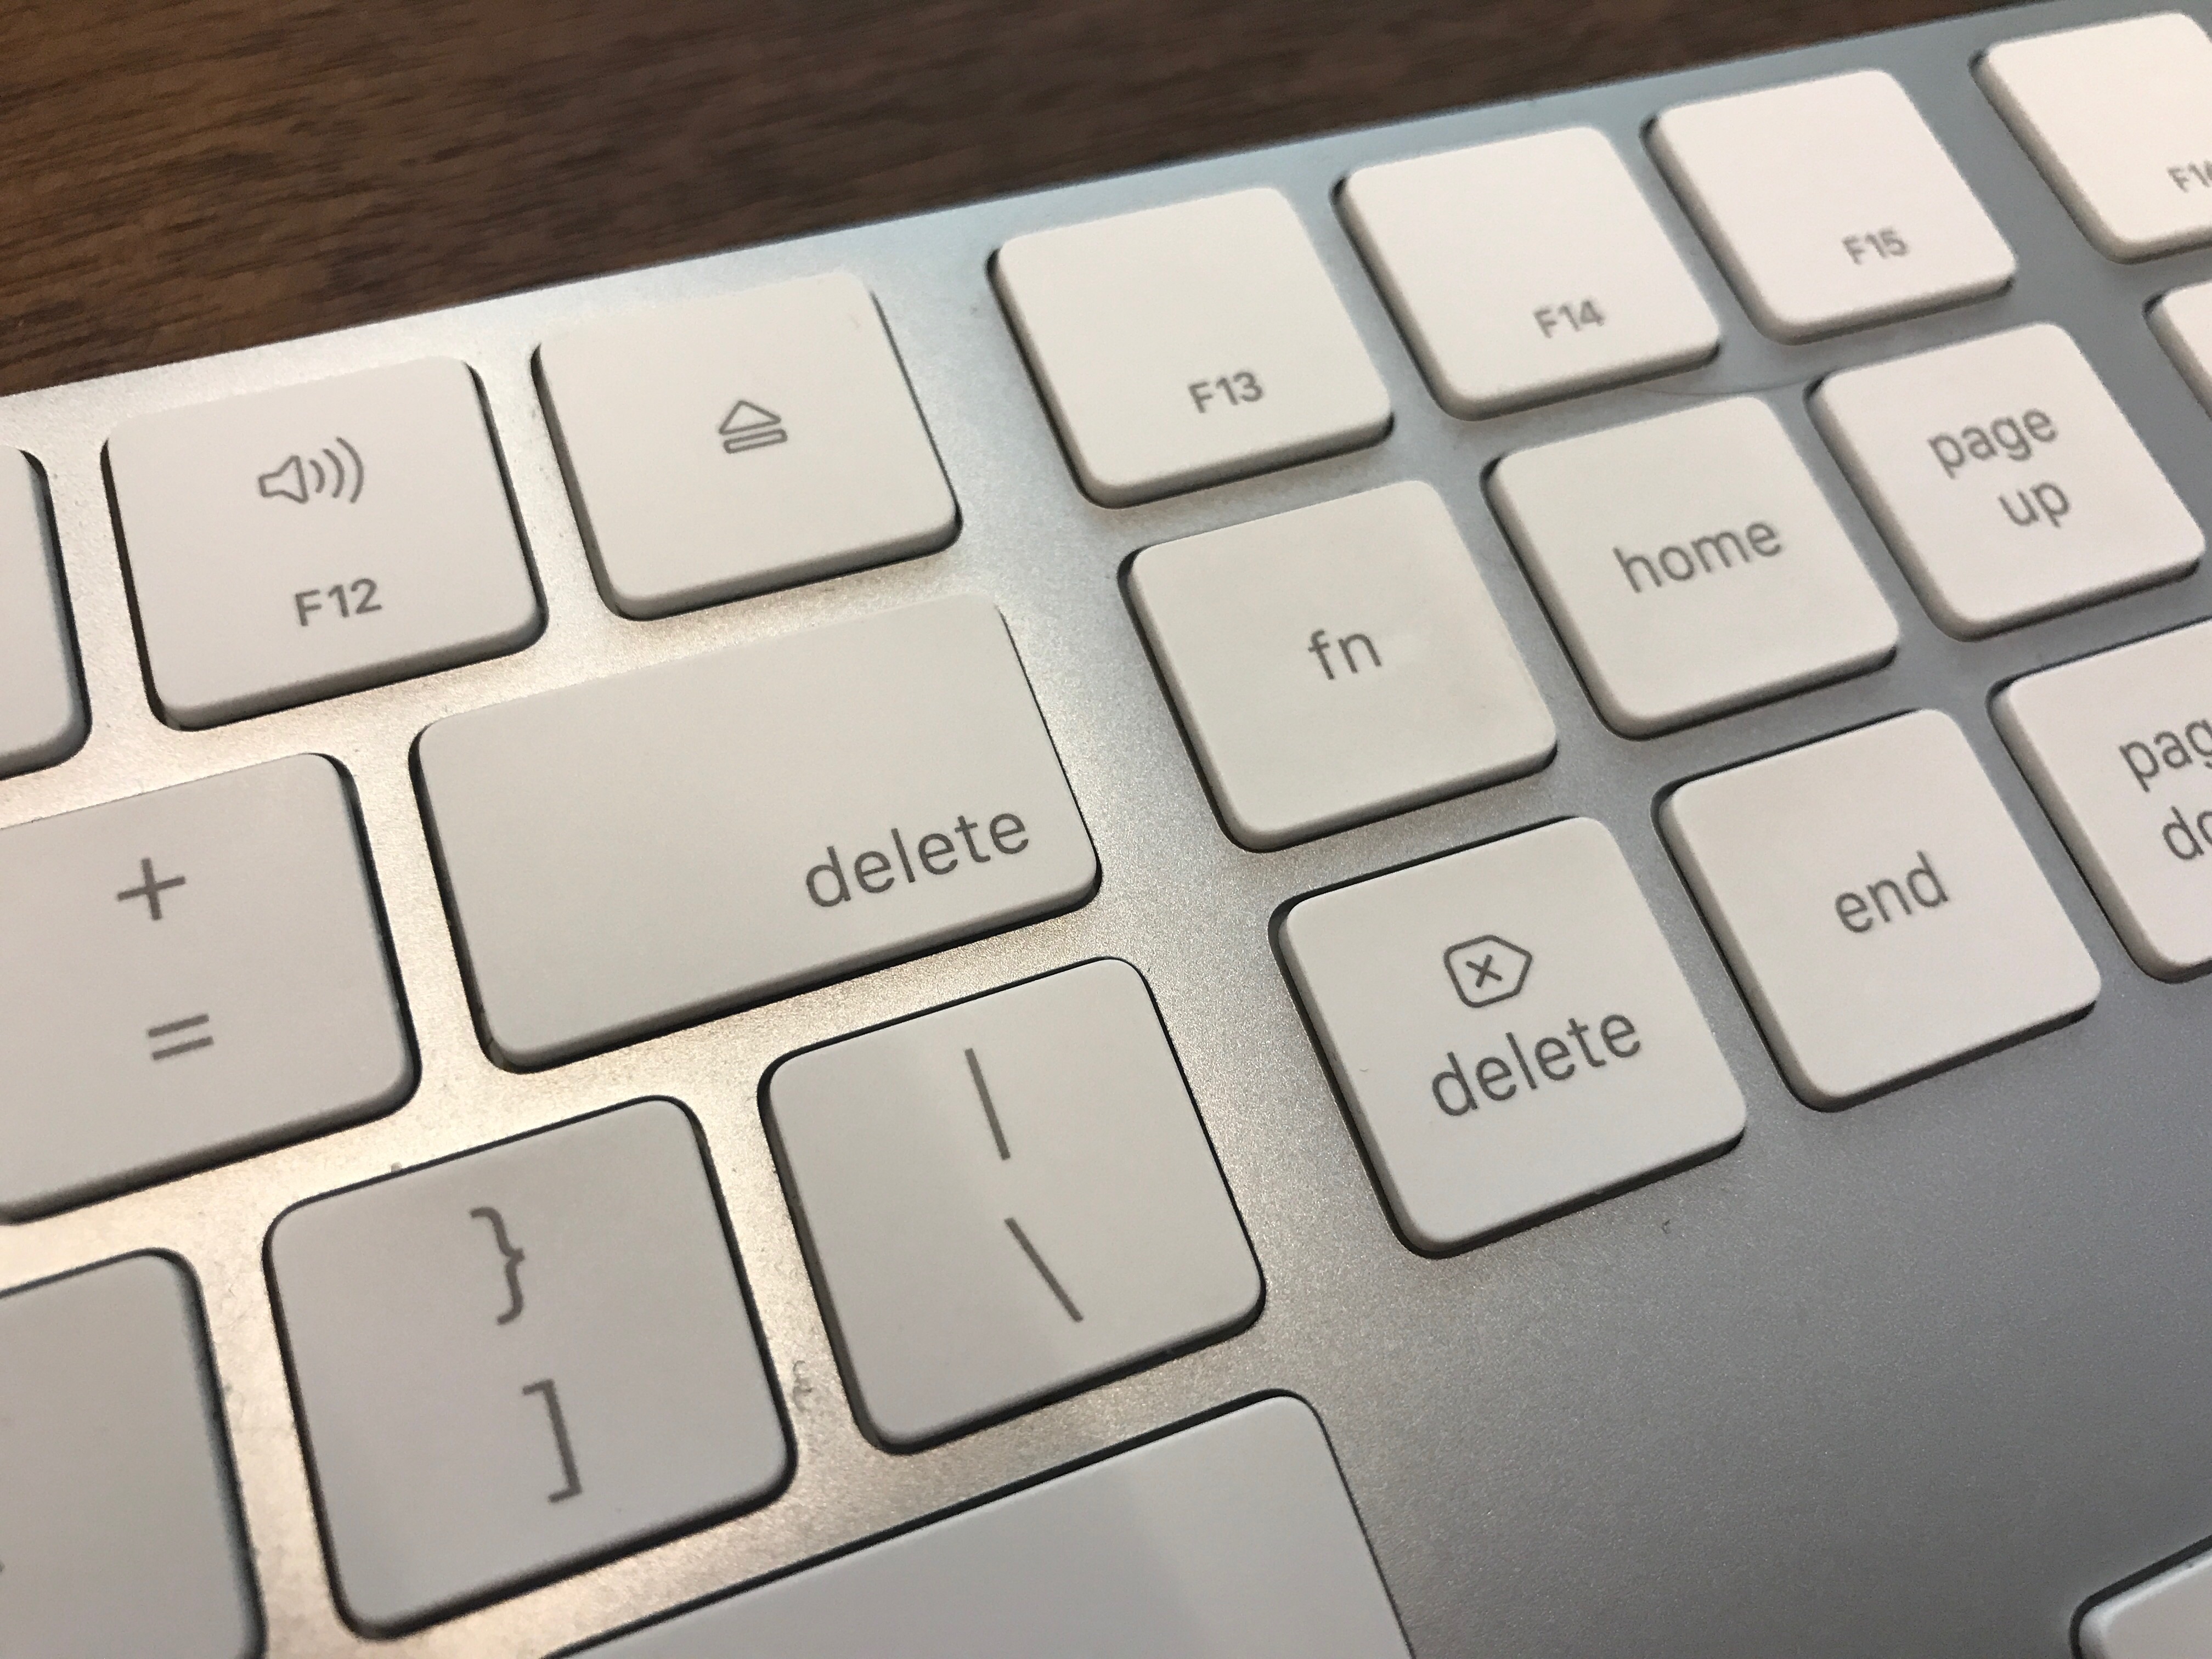 delete key not working on mac